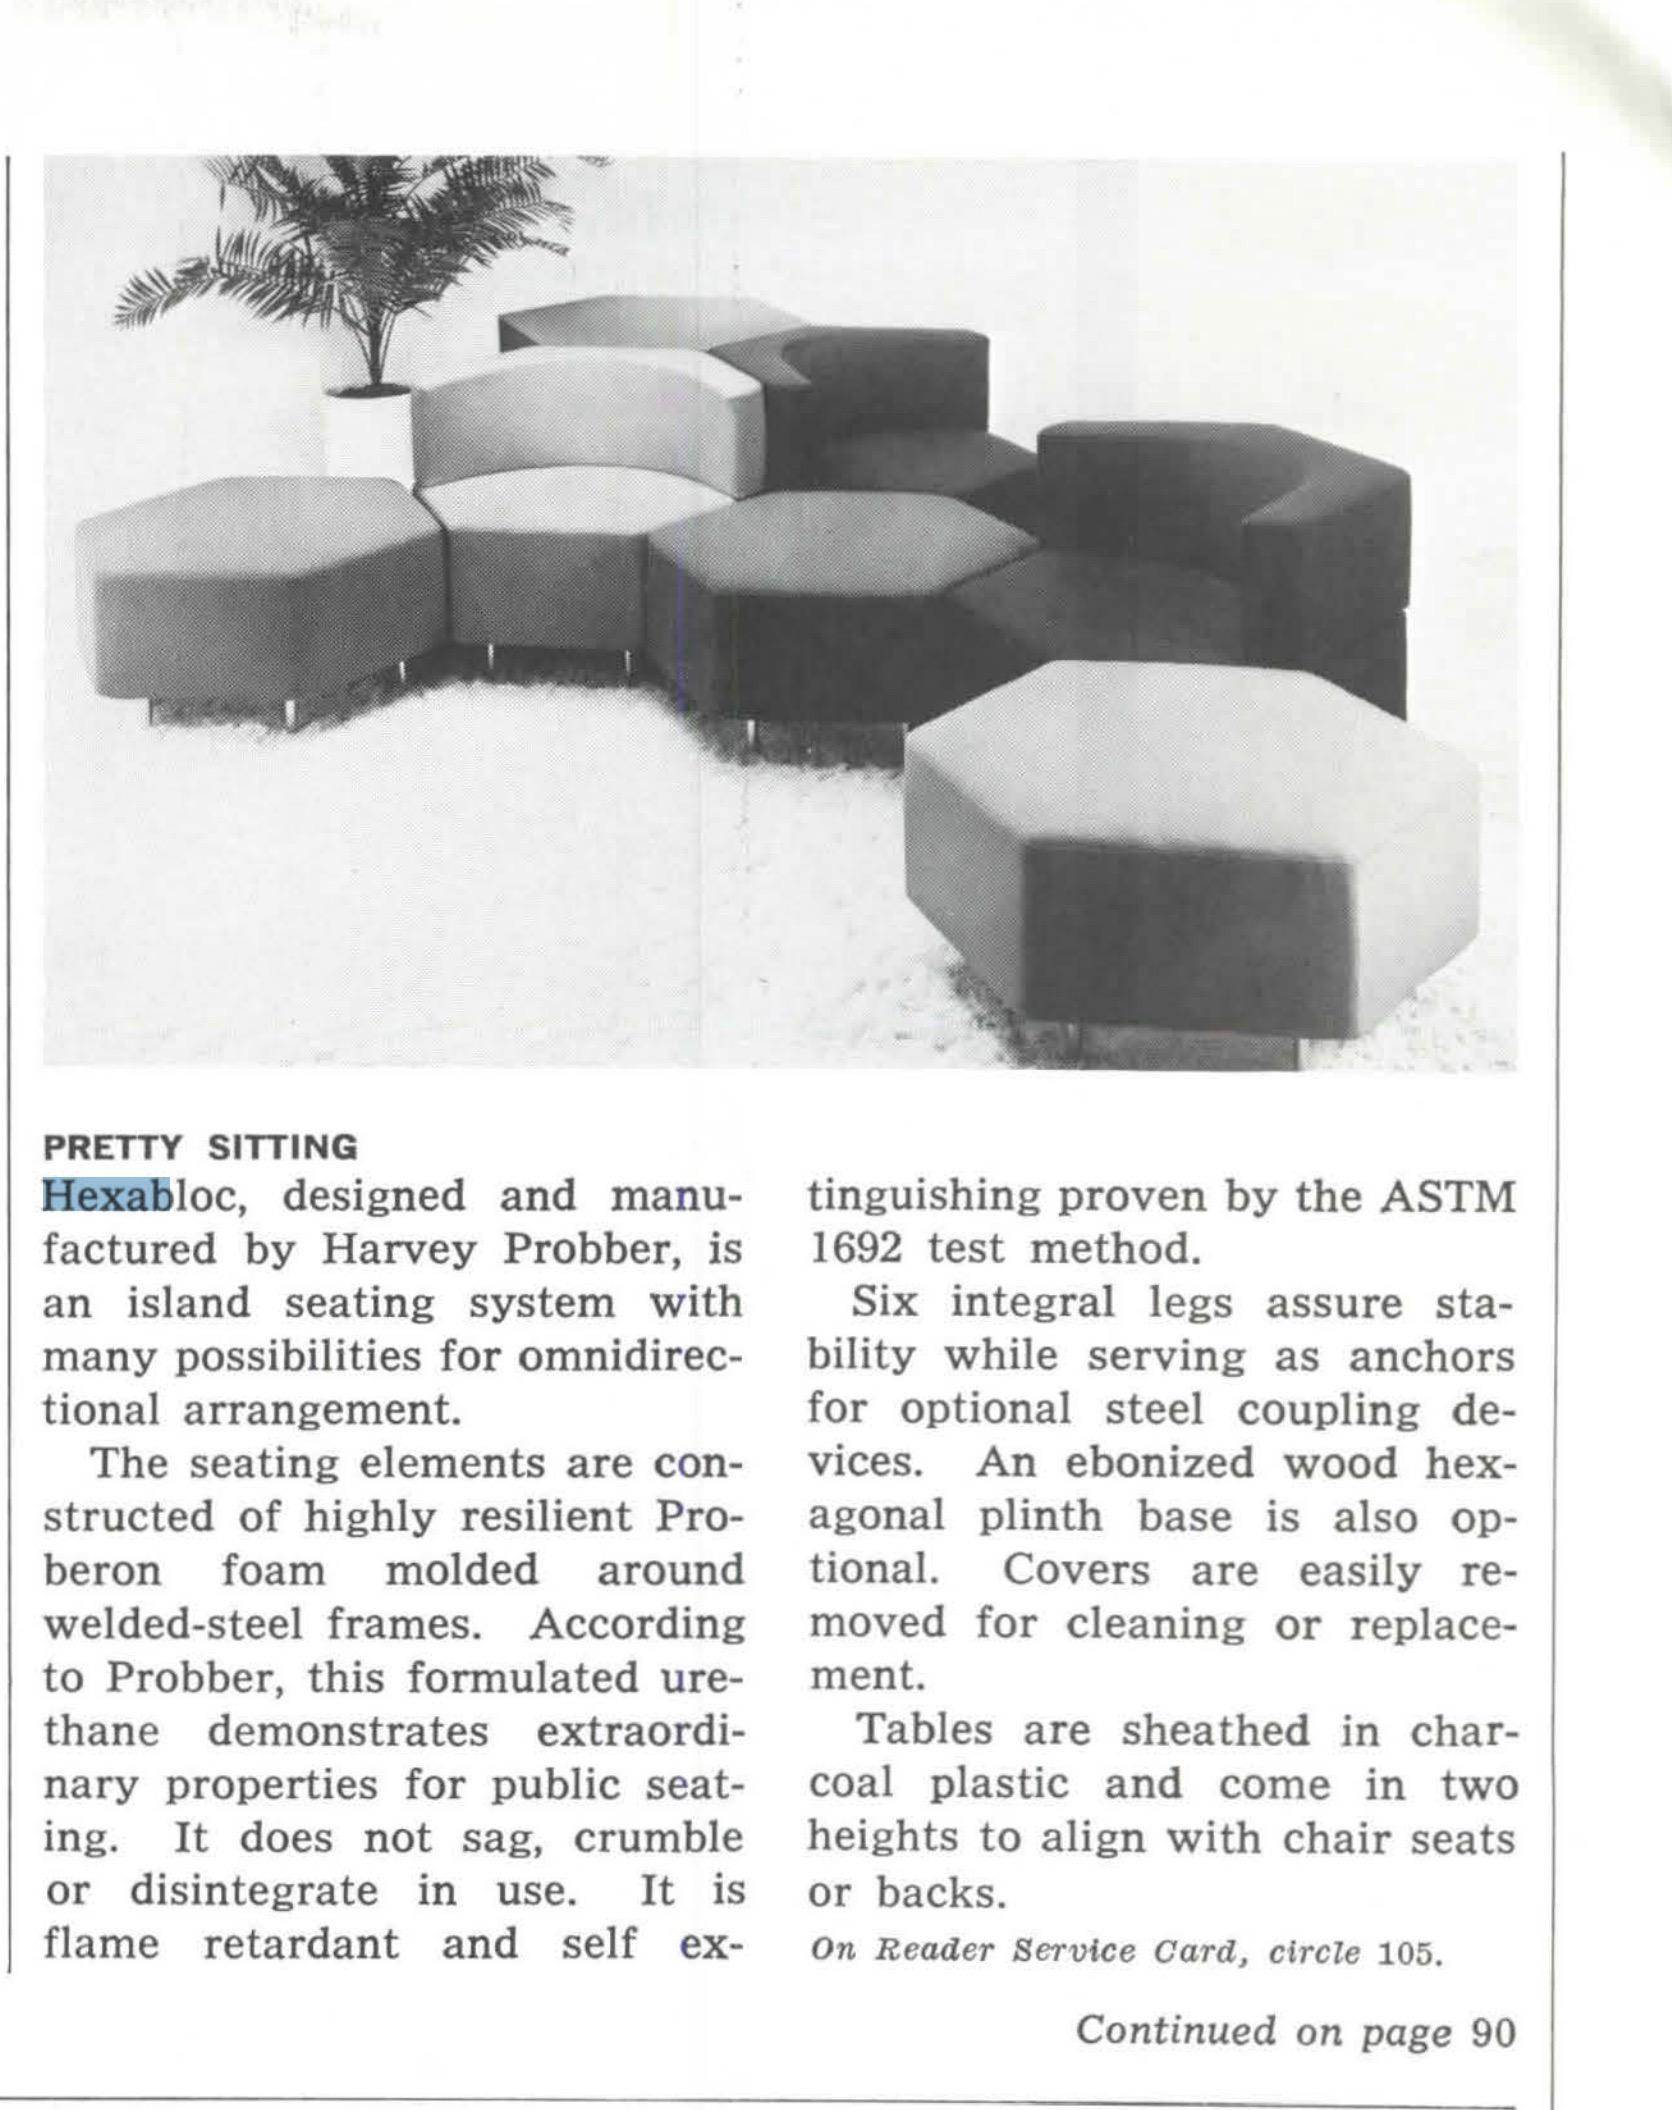 Origineller sechseckiger Stuhl, entworfen von Harvey Probber für sein Hexabloc-Inselsitzsystem mit vielen Möglichkeiten zur omnidirektionalen Anordnung.
Hergestellt aus hochelastischem 